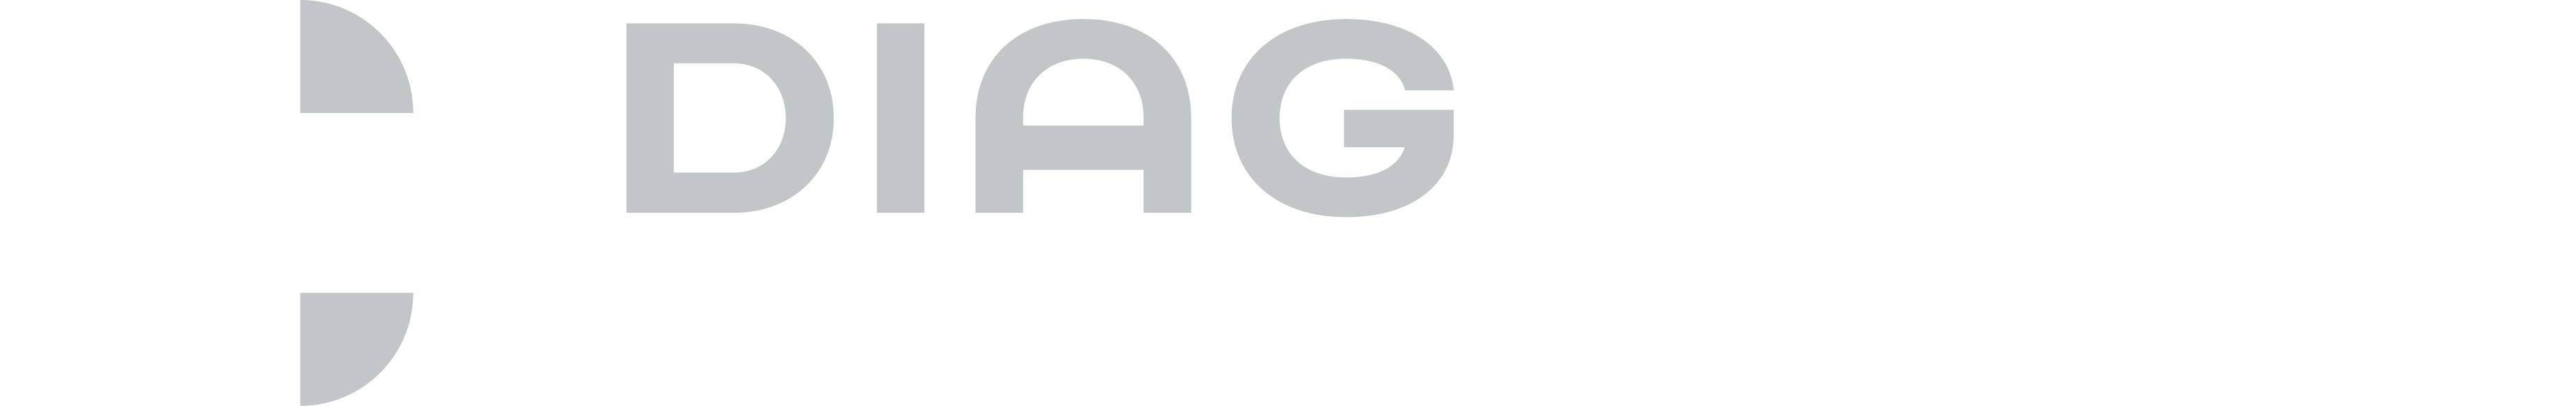 logo diagrams grey